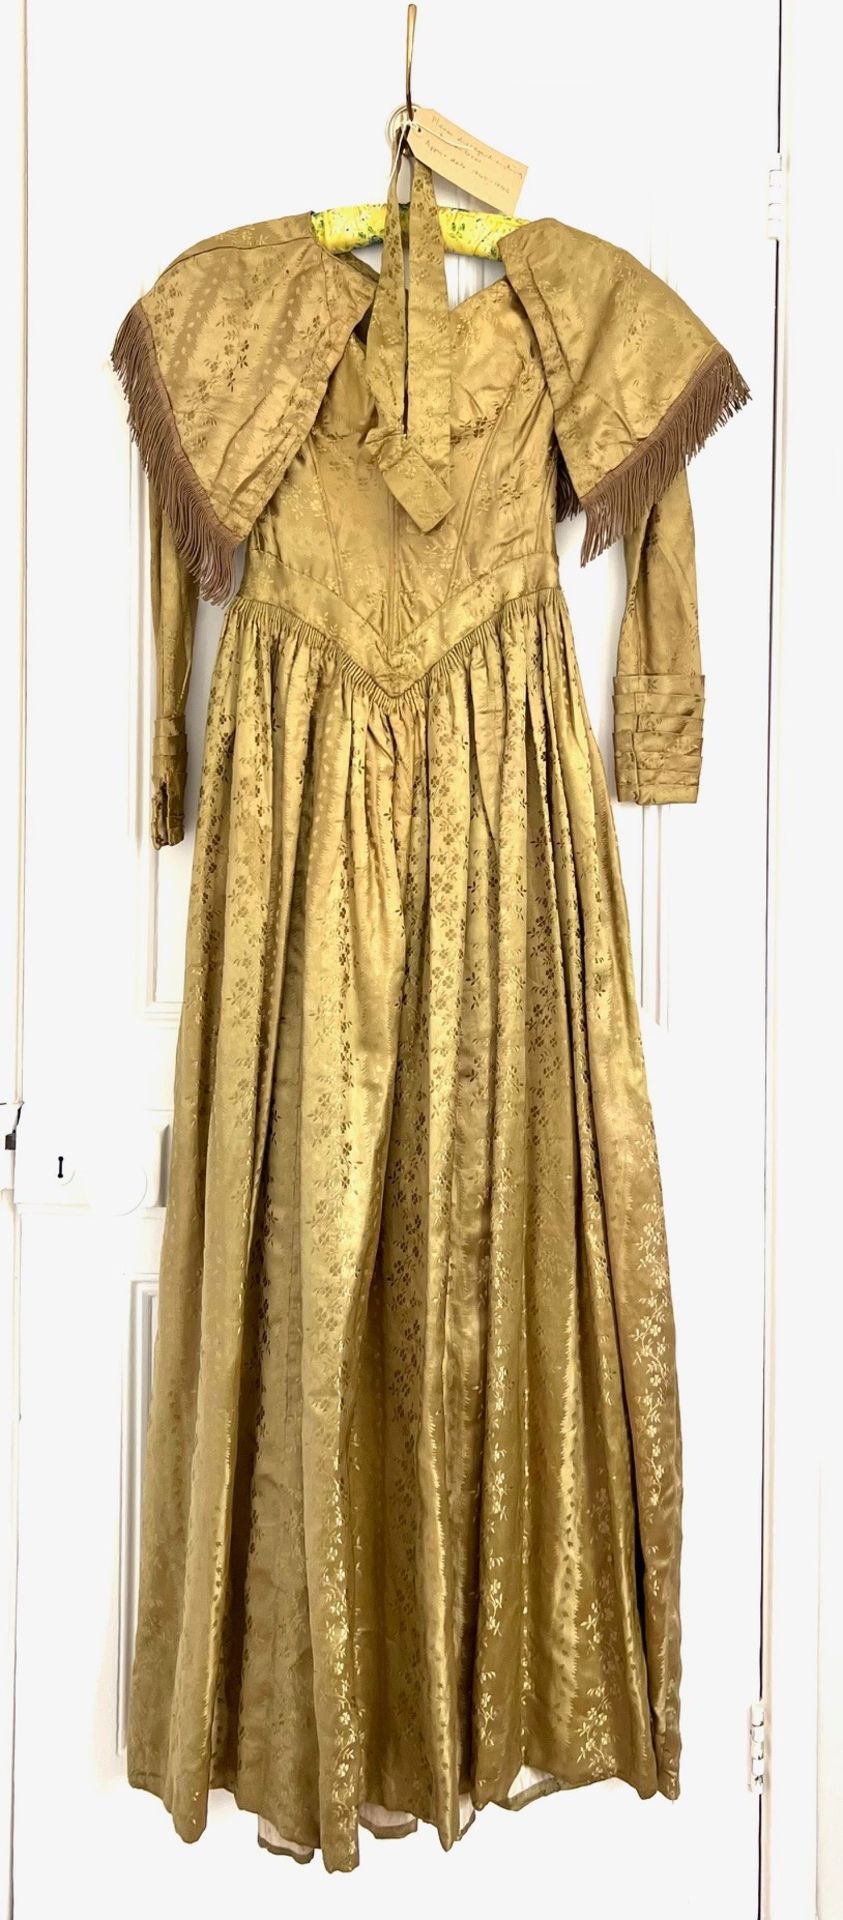 GOLD SILK/BROCADE DRESS, 1845-6, WAIST APPROX 60cm, LENGTH SHOULDER TO HEM APPROX 142cm, SEPARATE